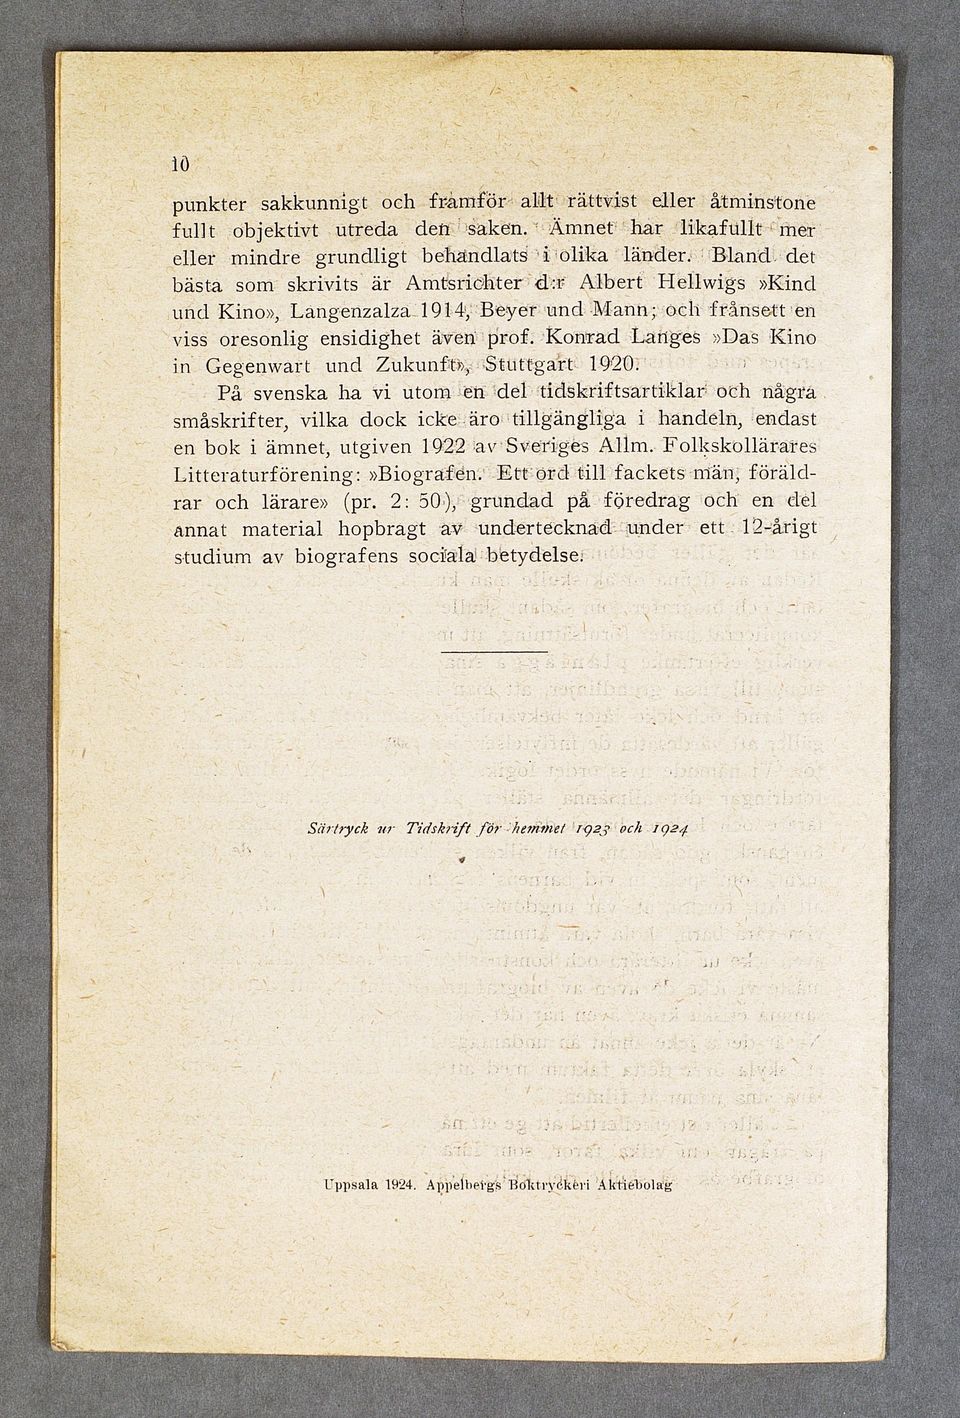 K onrad Langes»Das Kino in Gegenwart und Zukunft», S tu ttg a rt 1920.